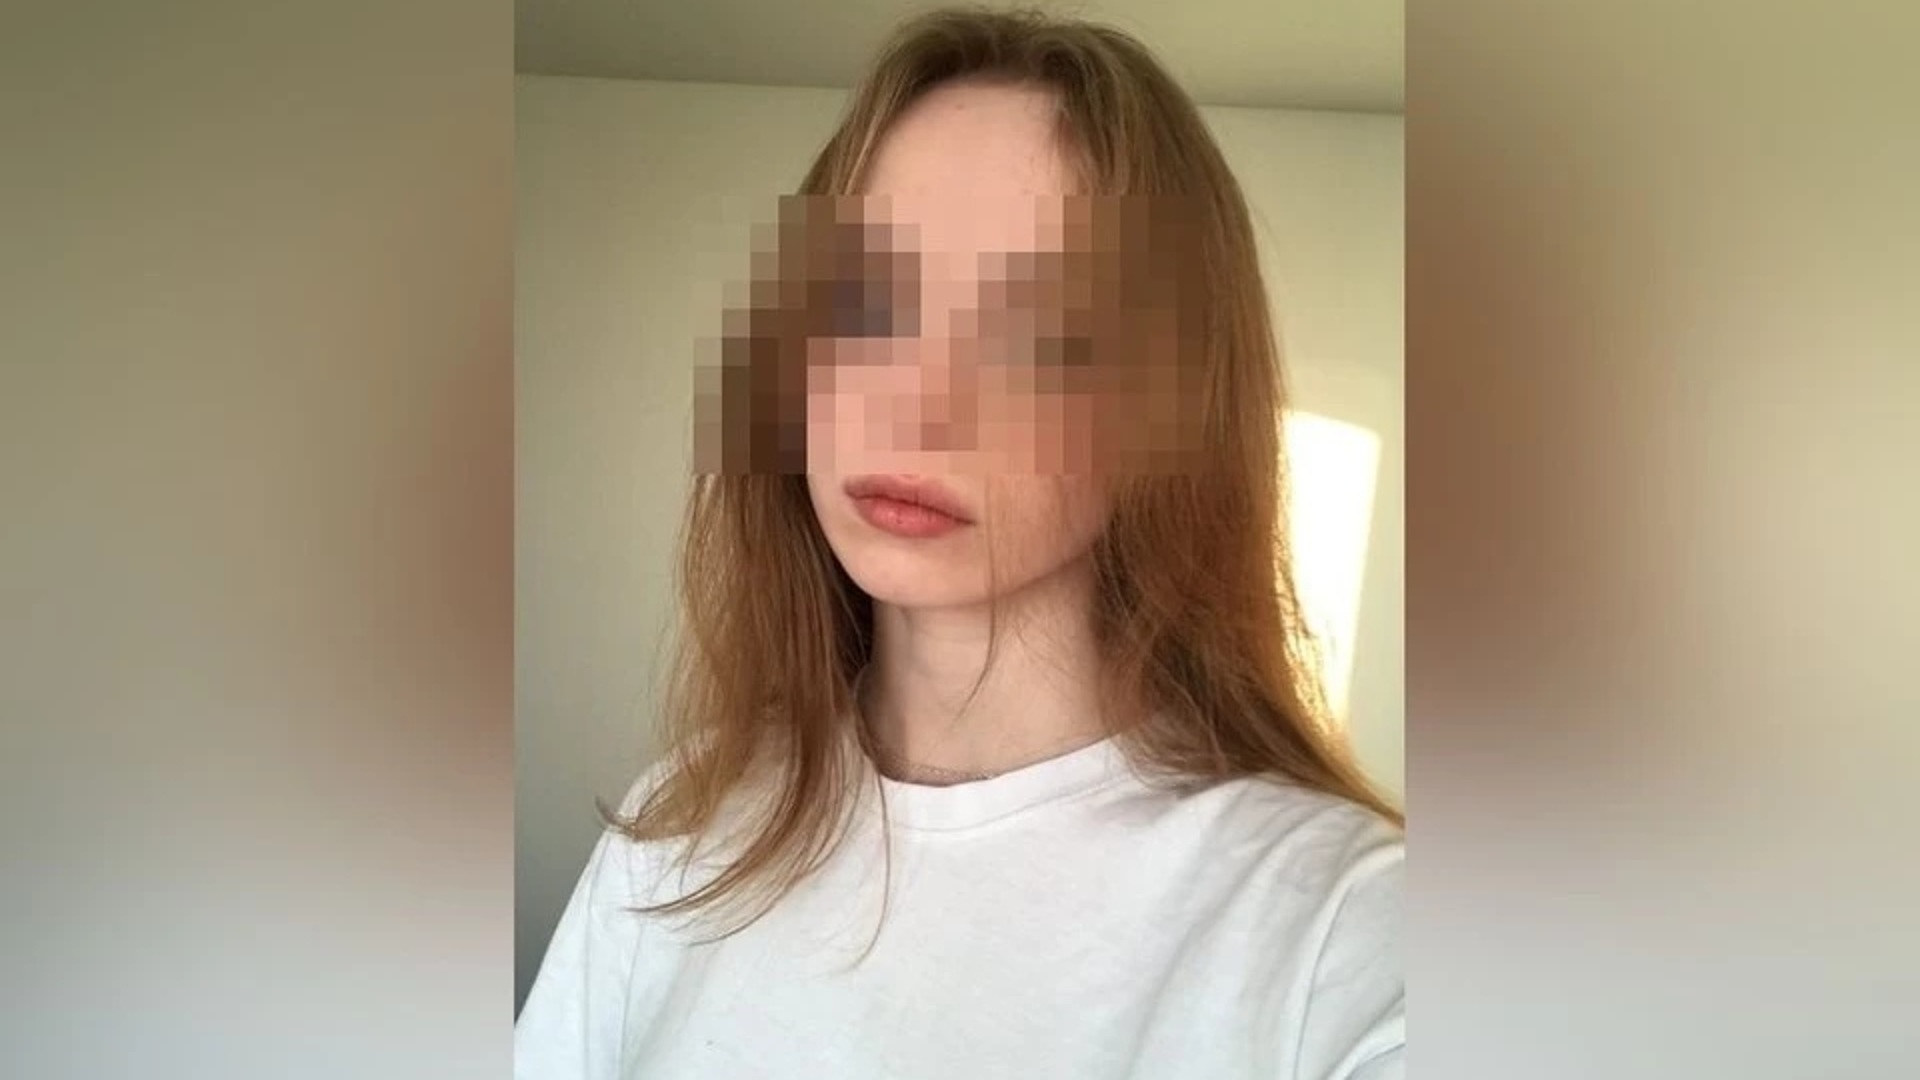 Соц сети погибших. Убитая 17 летняя девушка в Новосибирске. 19 Летняя девушка.